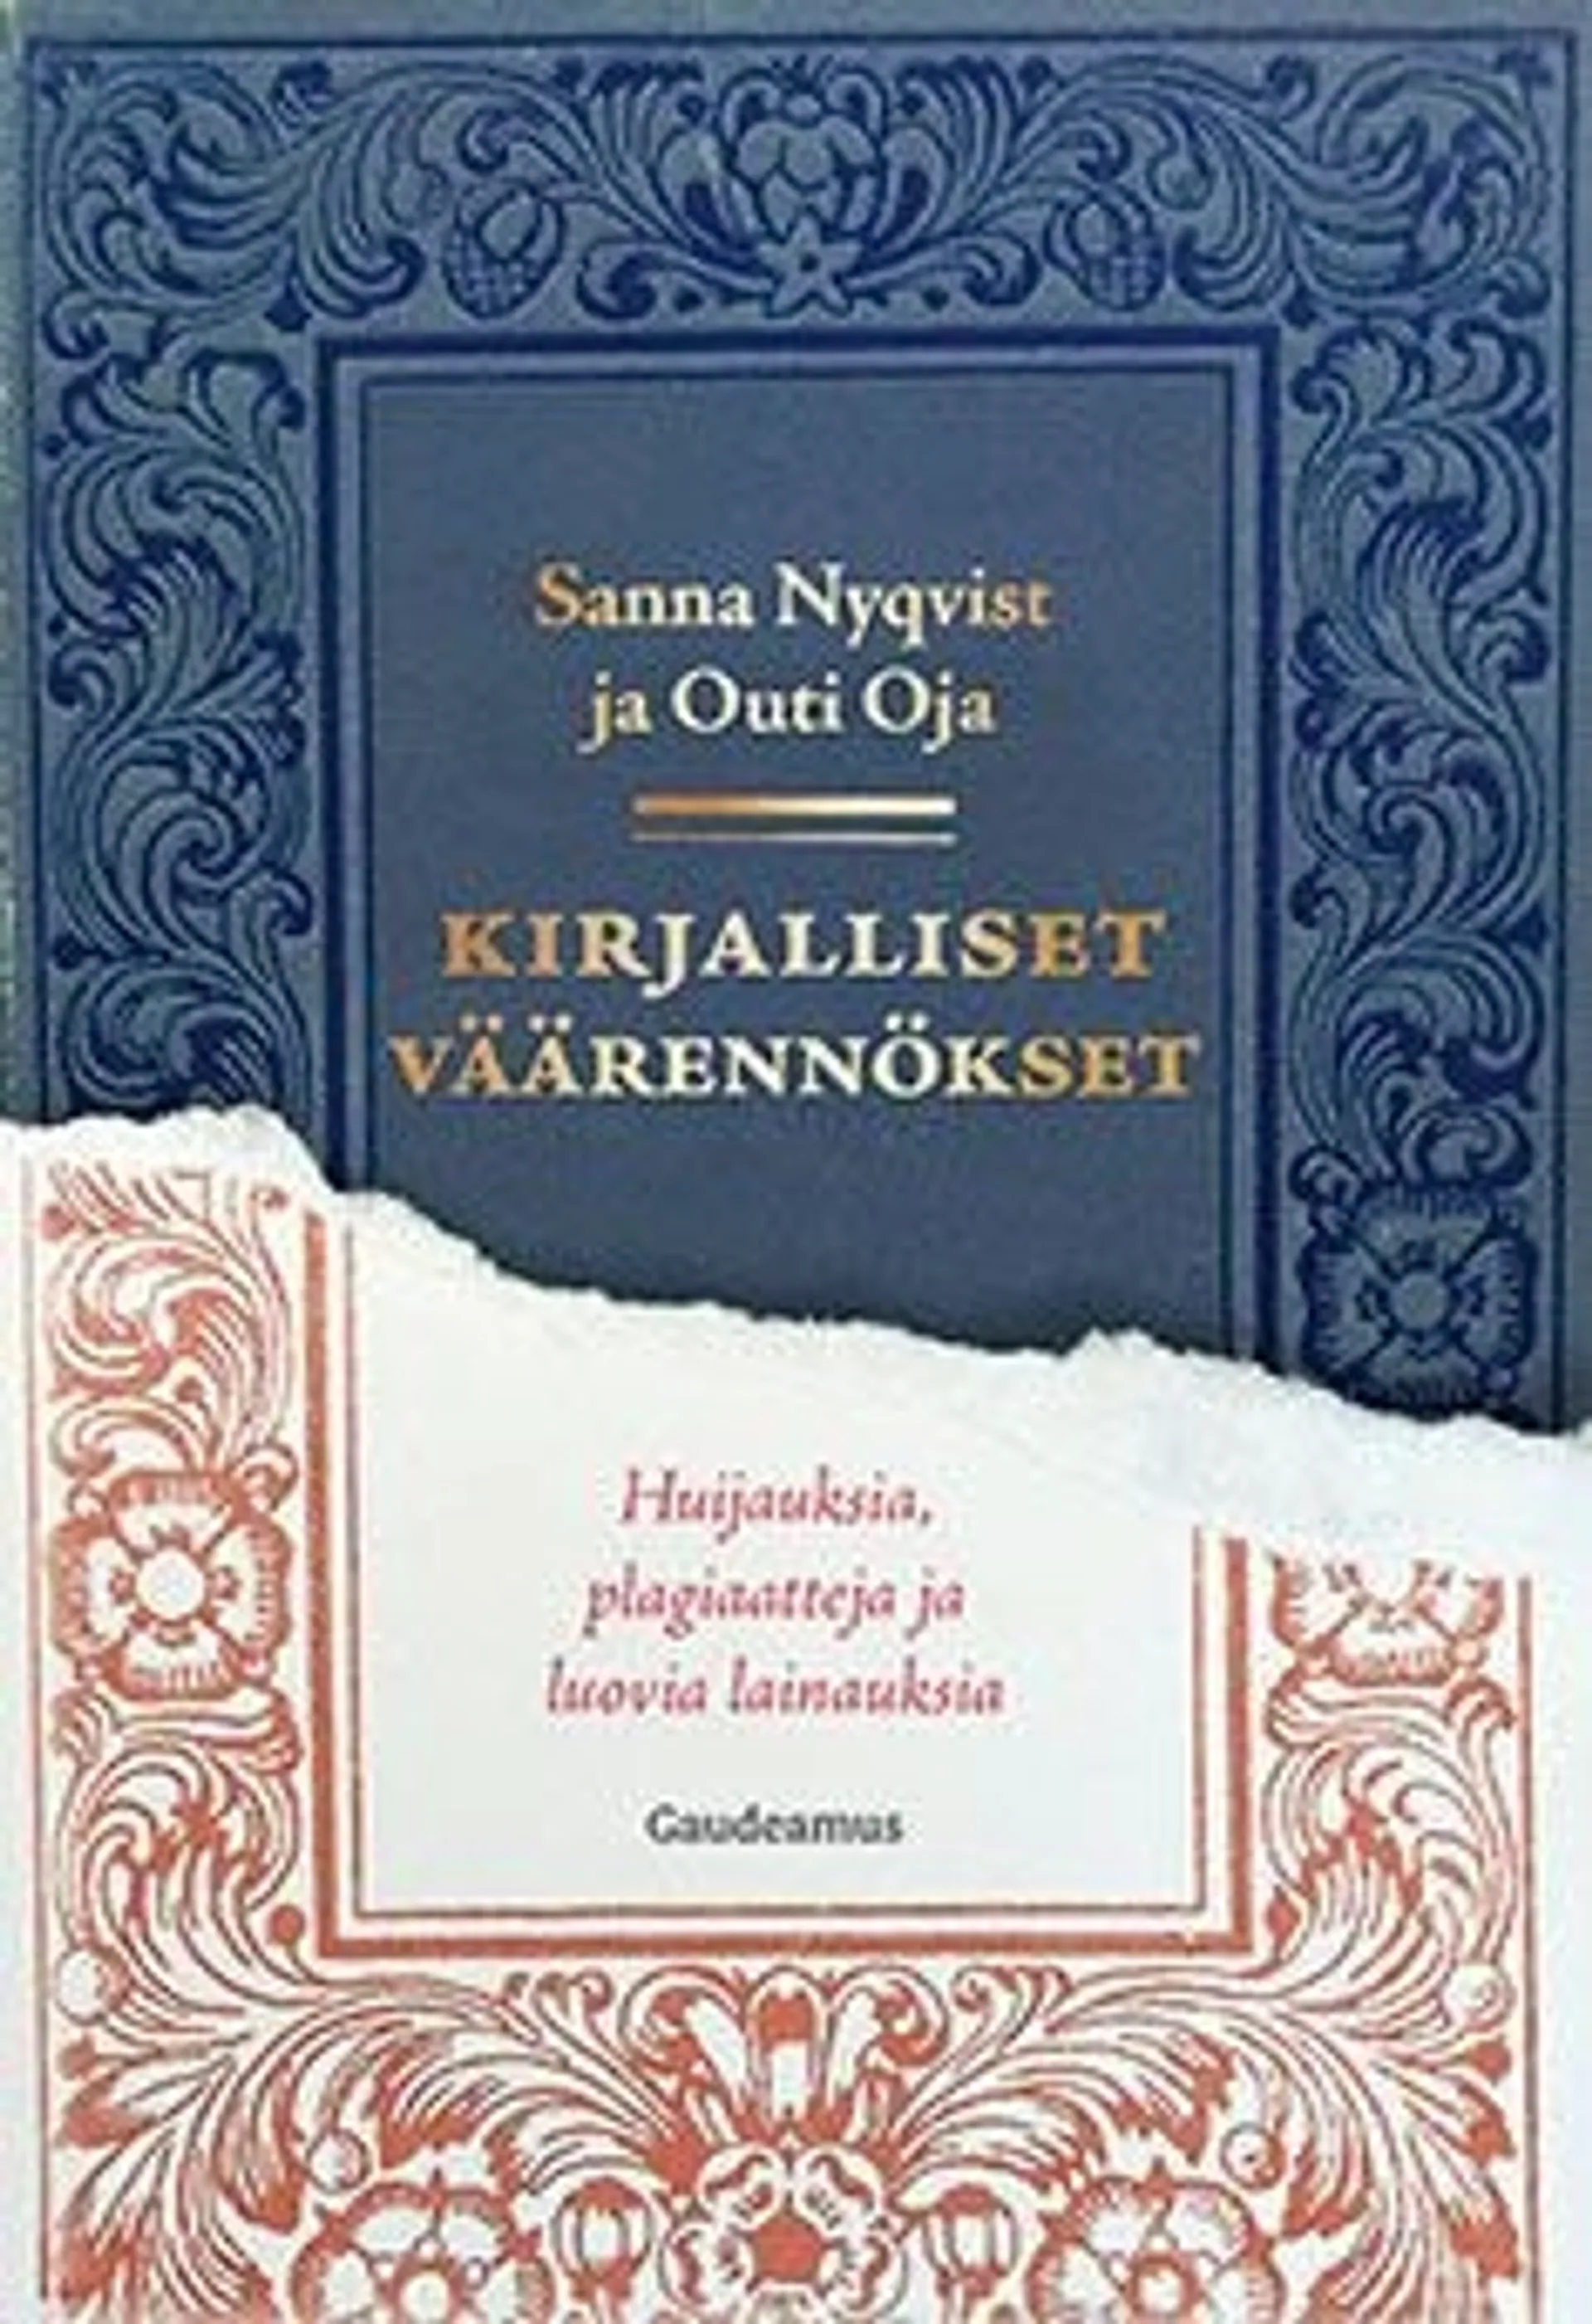 Nyqvist, Kirjalliset väärennökset